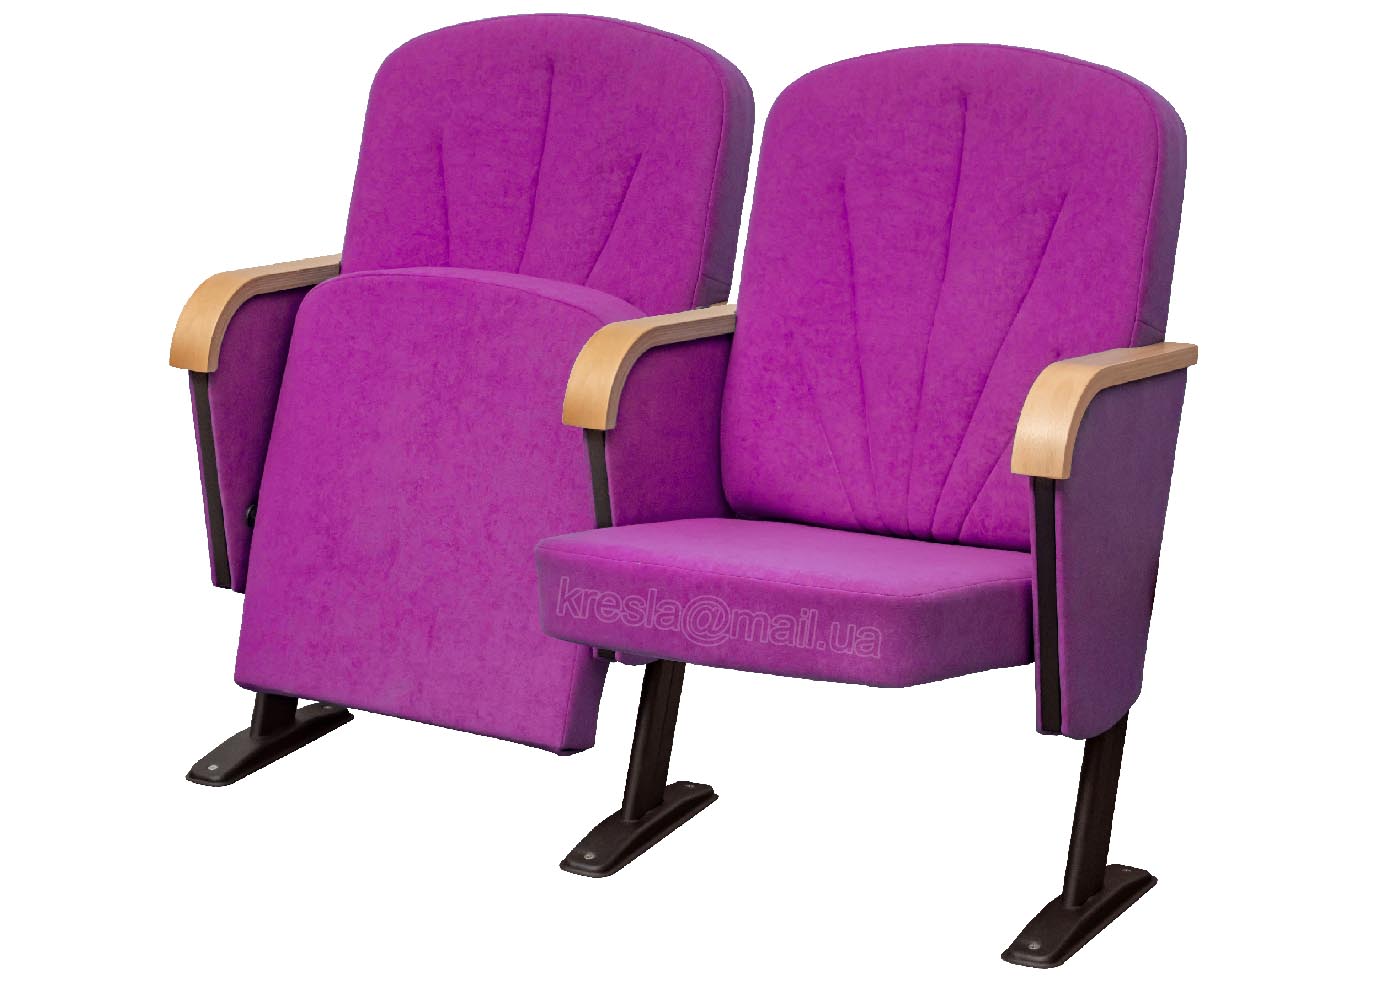 Театральные кресла для зала кресла